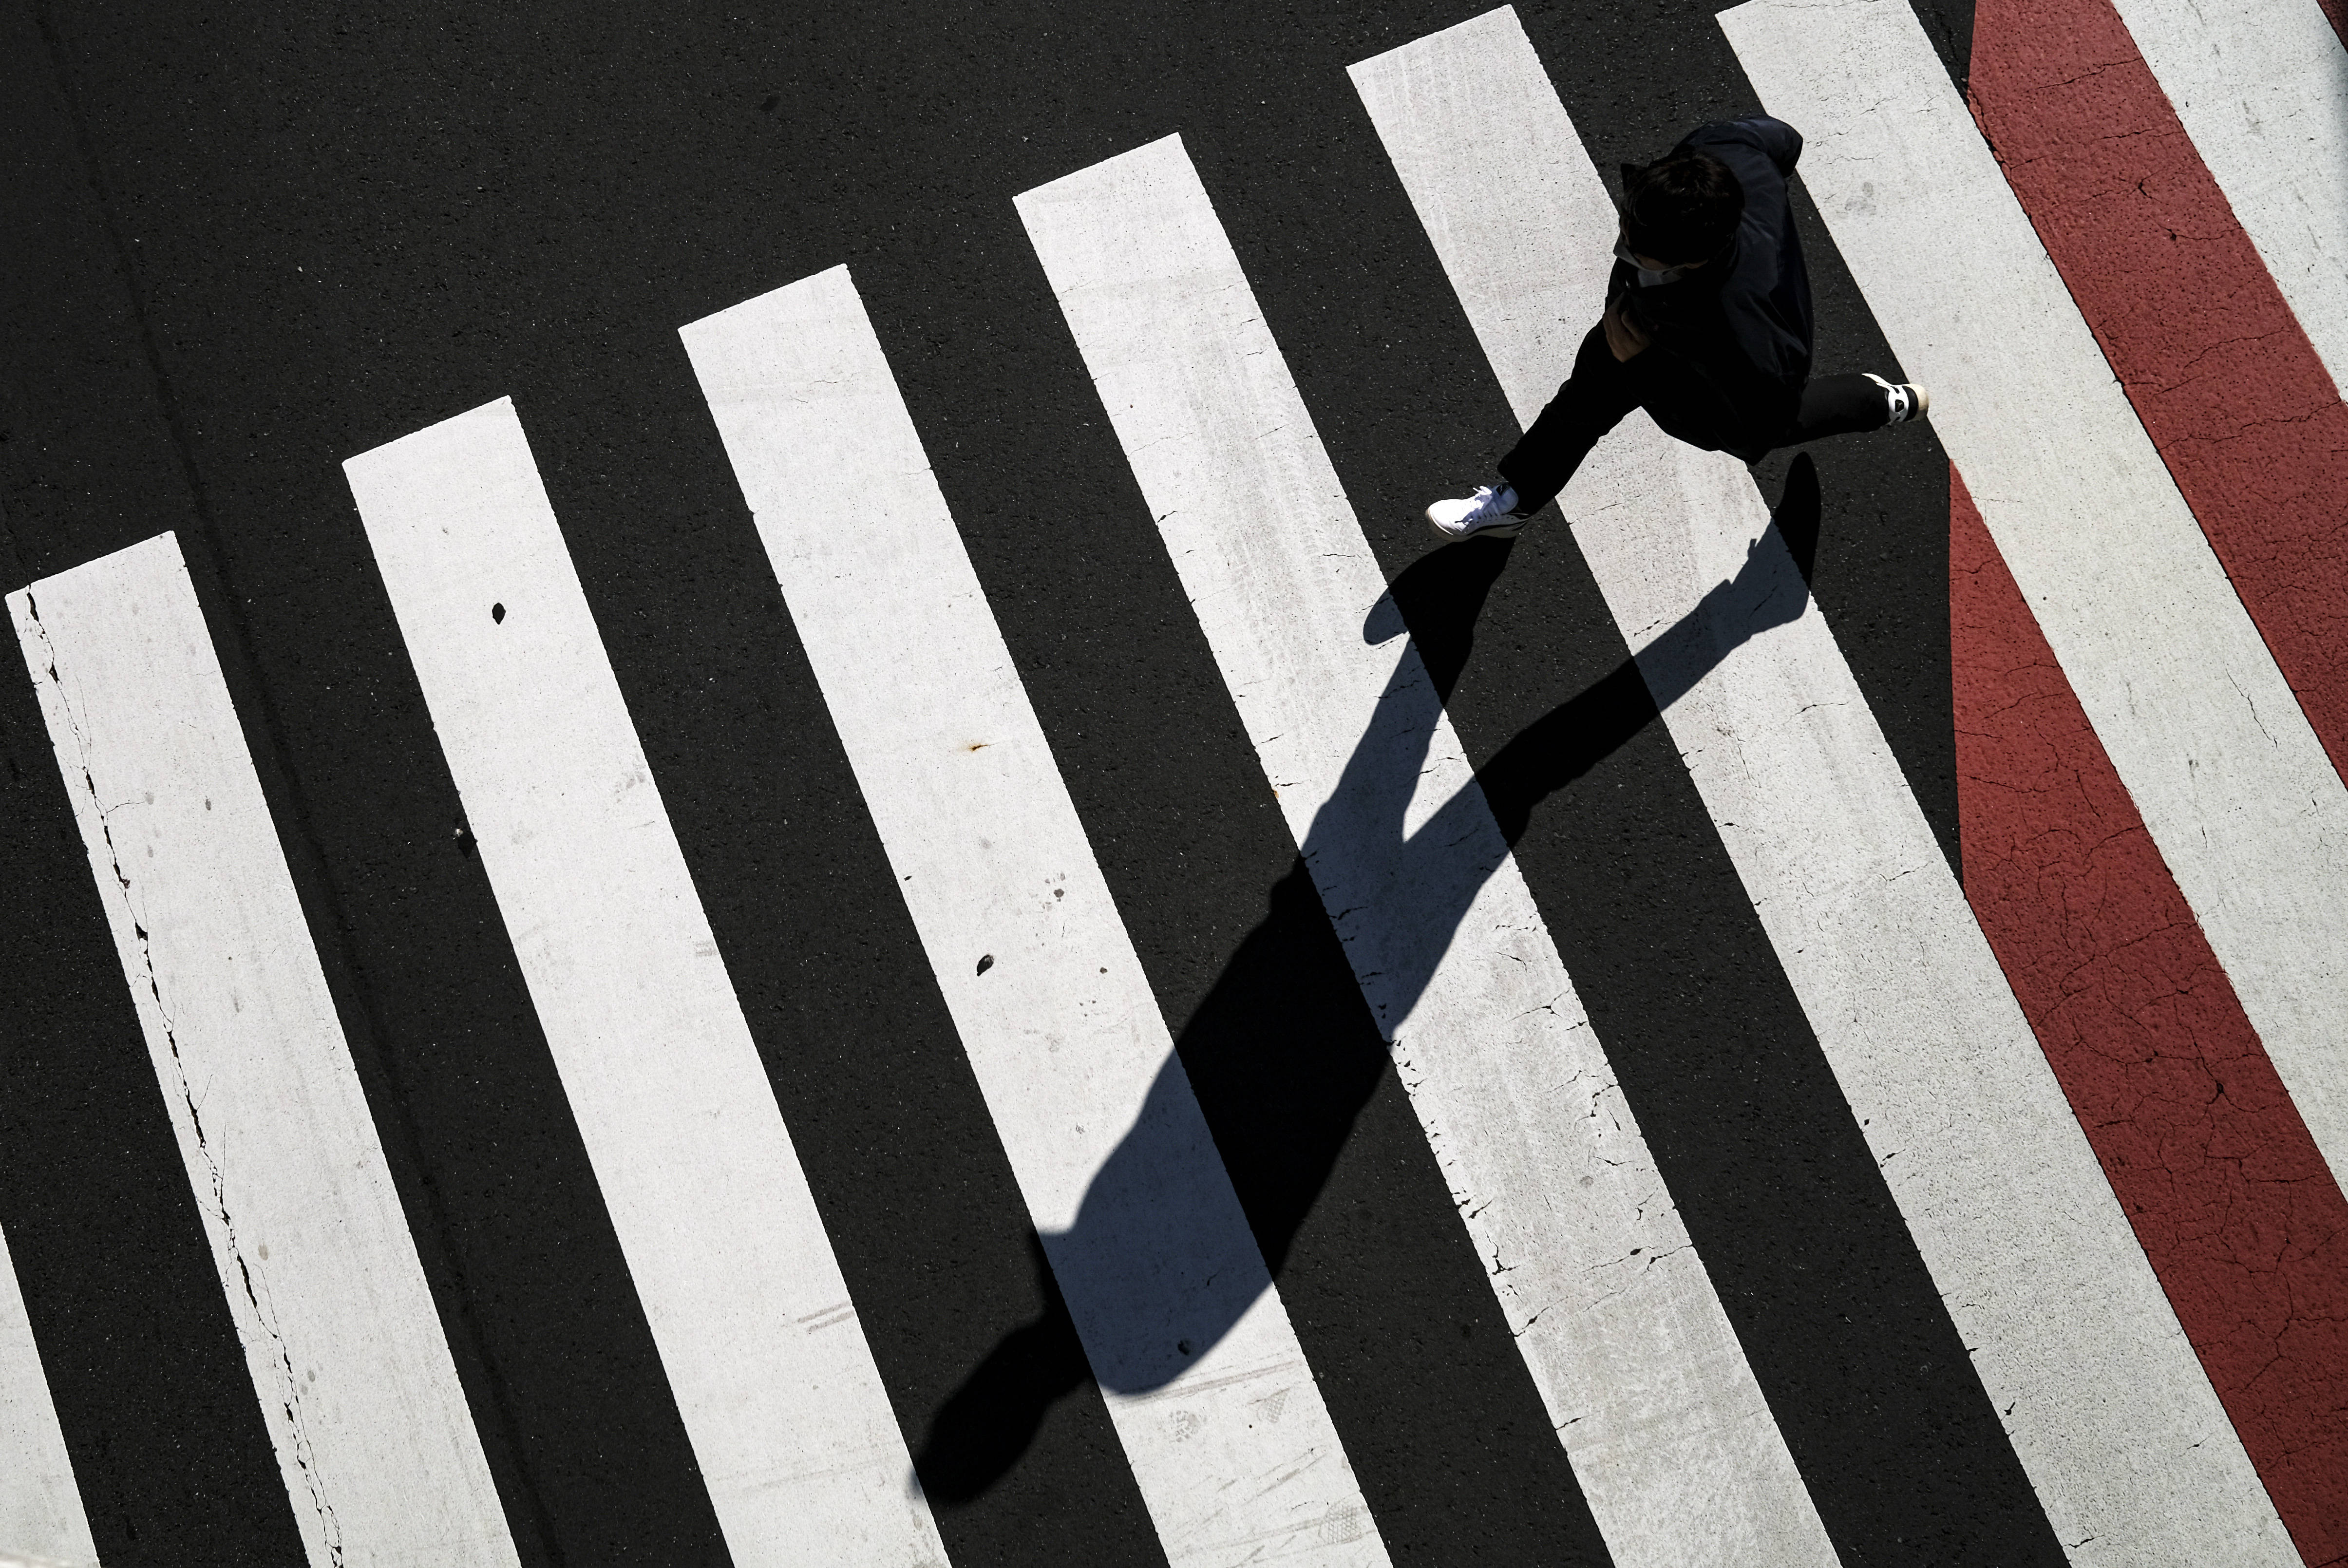 4月26日,一名跑步者在日本东京经过斑马线